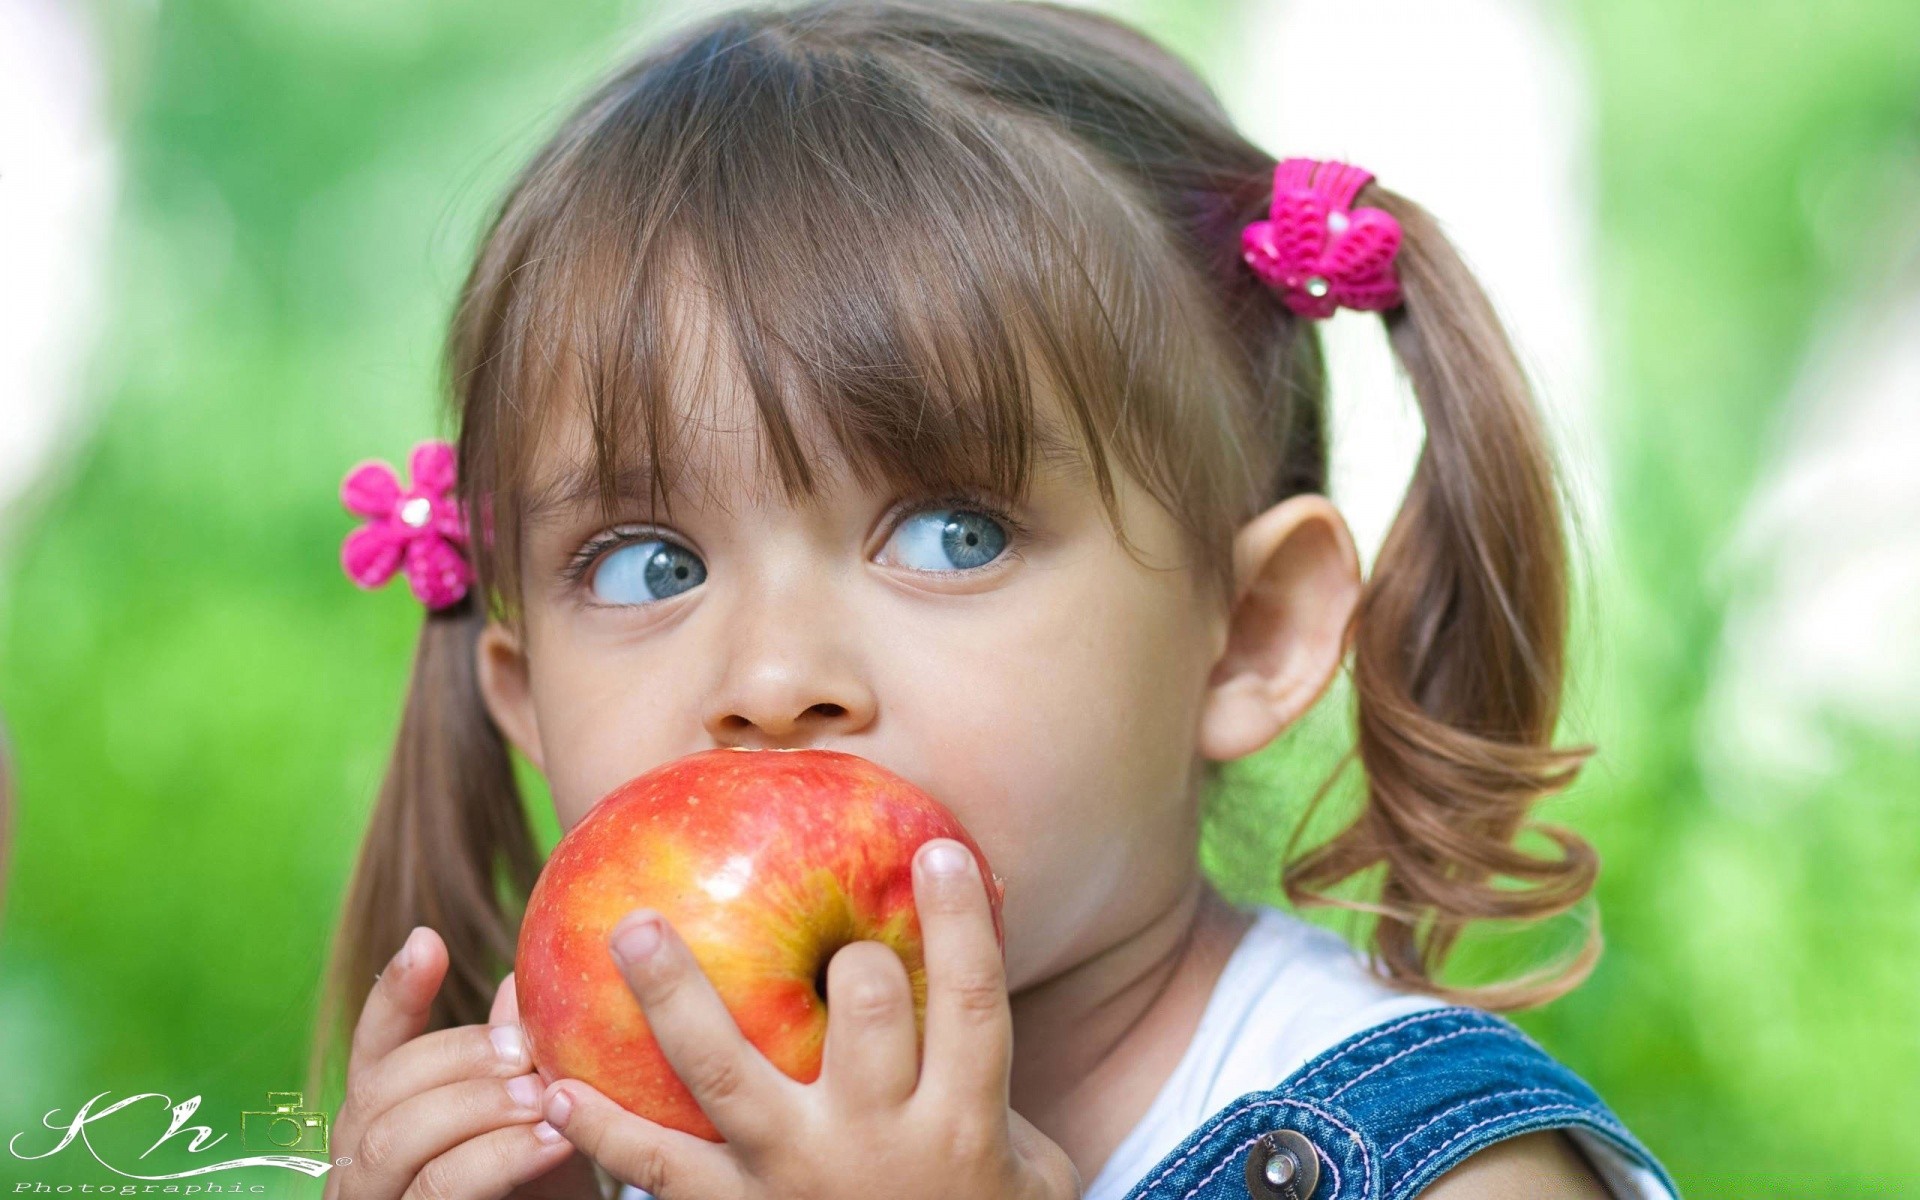 дети ребенок яблоко милые мало природа лето удовольствие девушка на открытом воздухе радость довольно удовольствия невинность кондитерское изделие